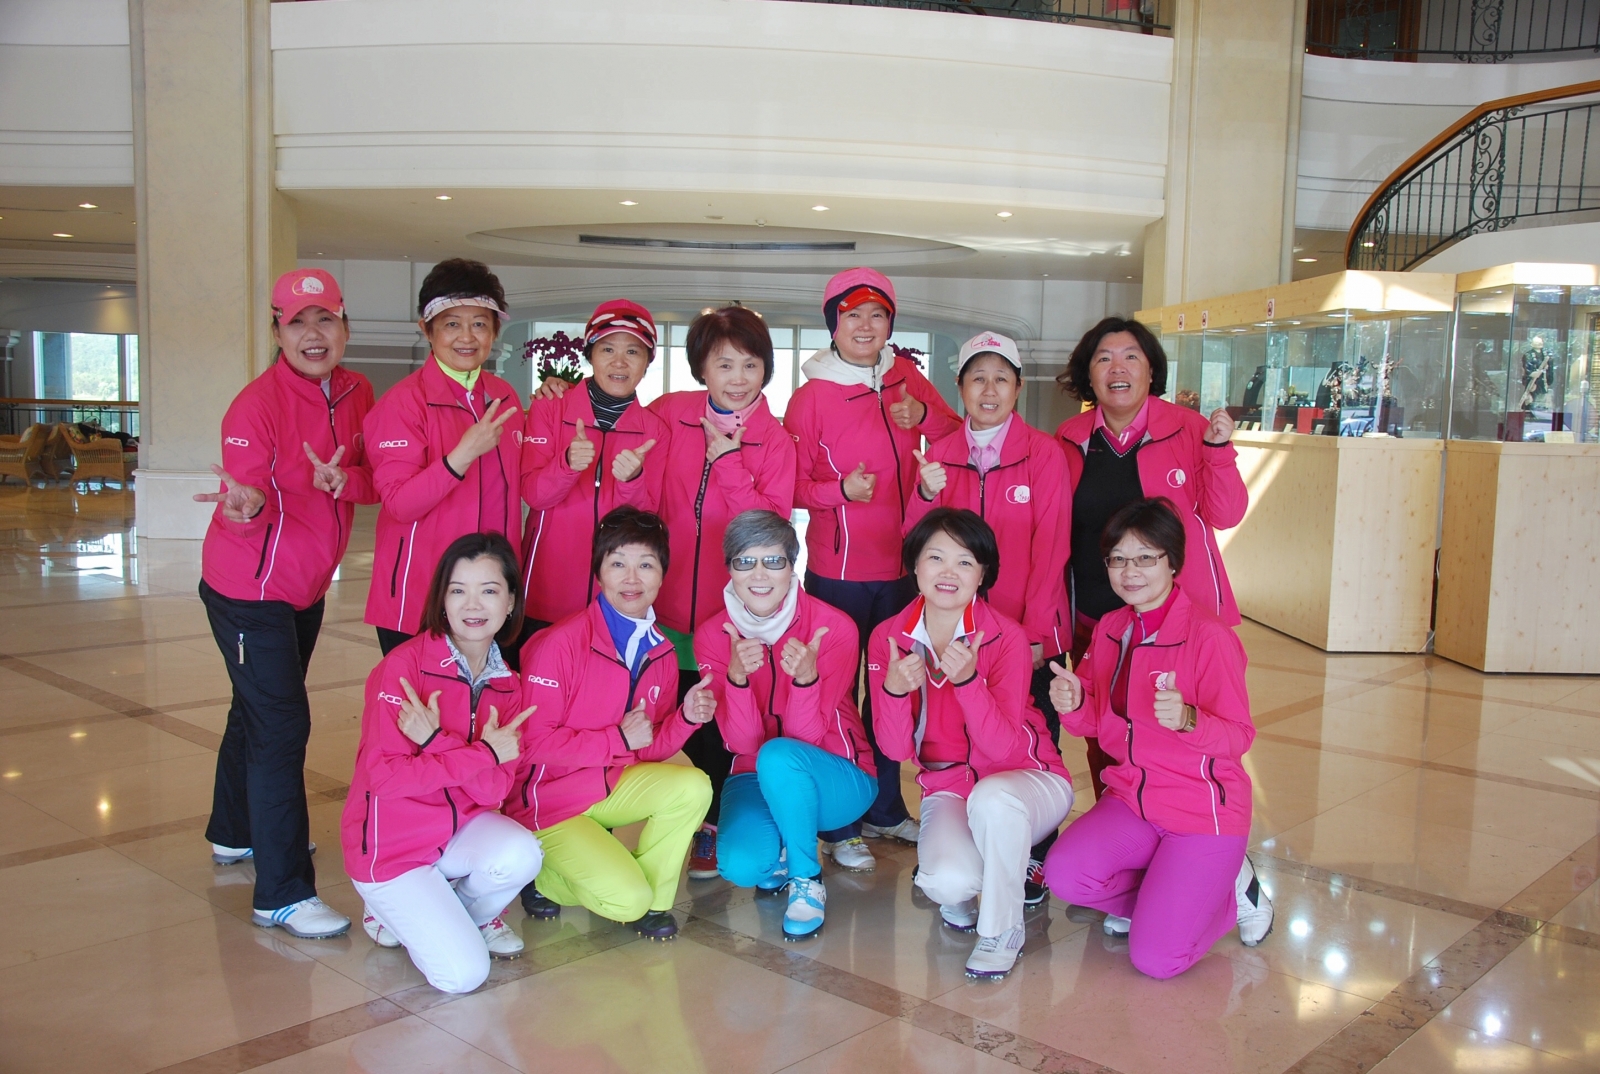 婦女會成員經常著桃紅色制服在各大賽事現場協助賽事，十分吸睛。(圖攝於2016年3月2日美麗華季賽)